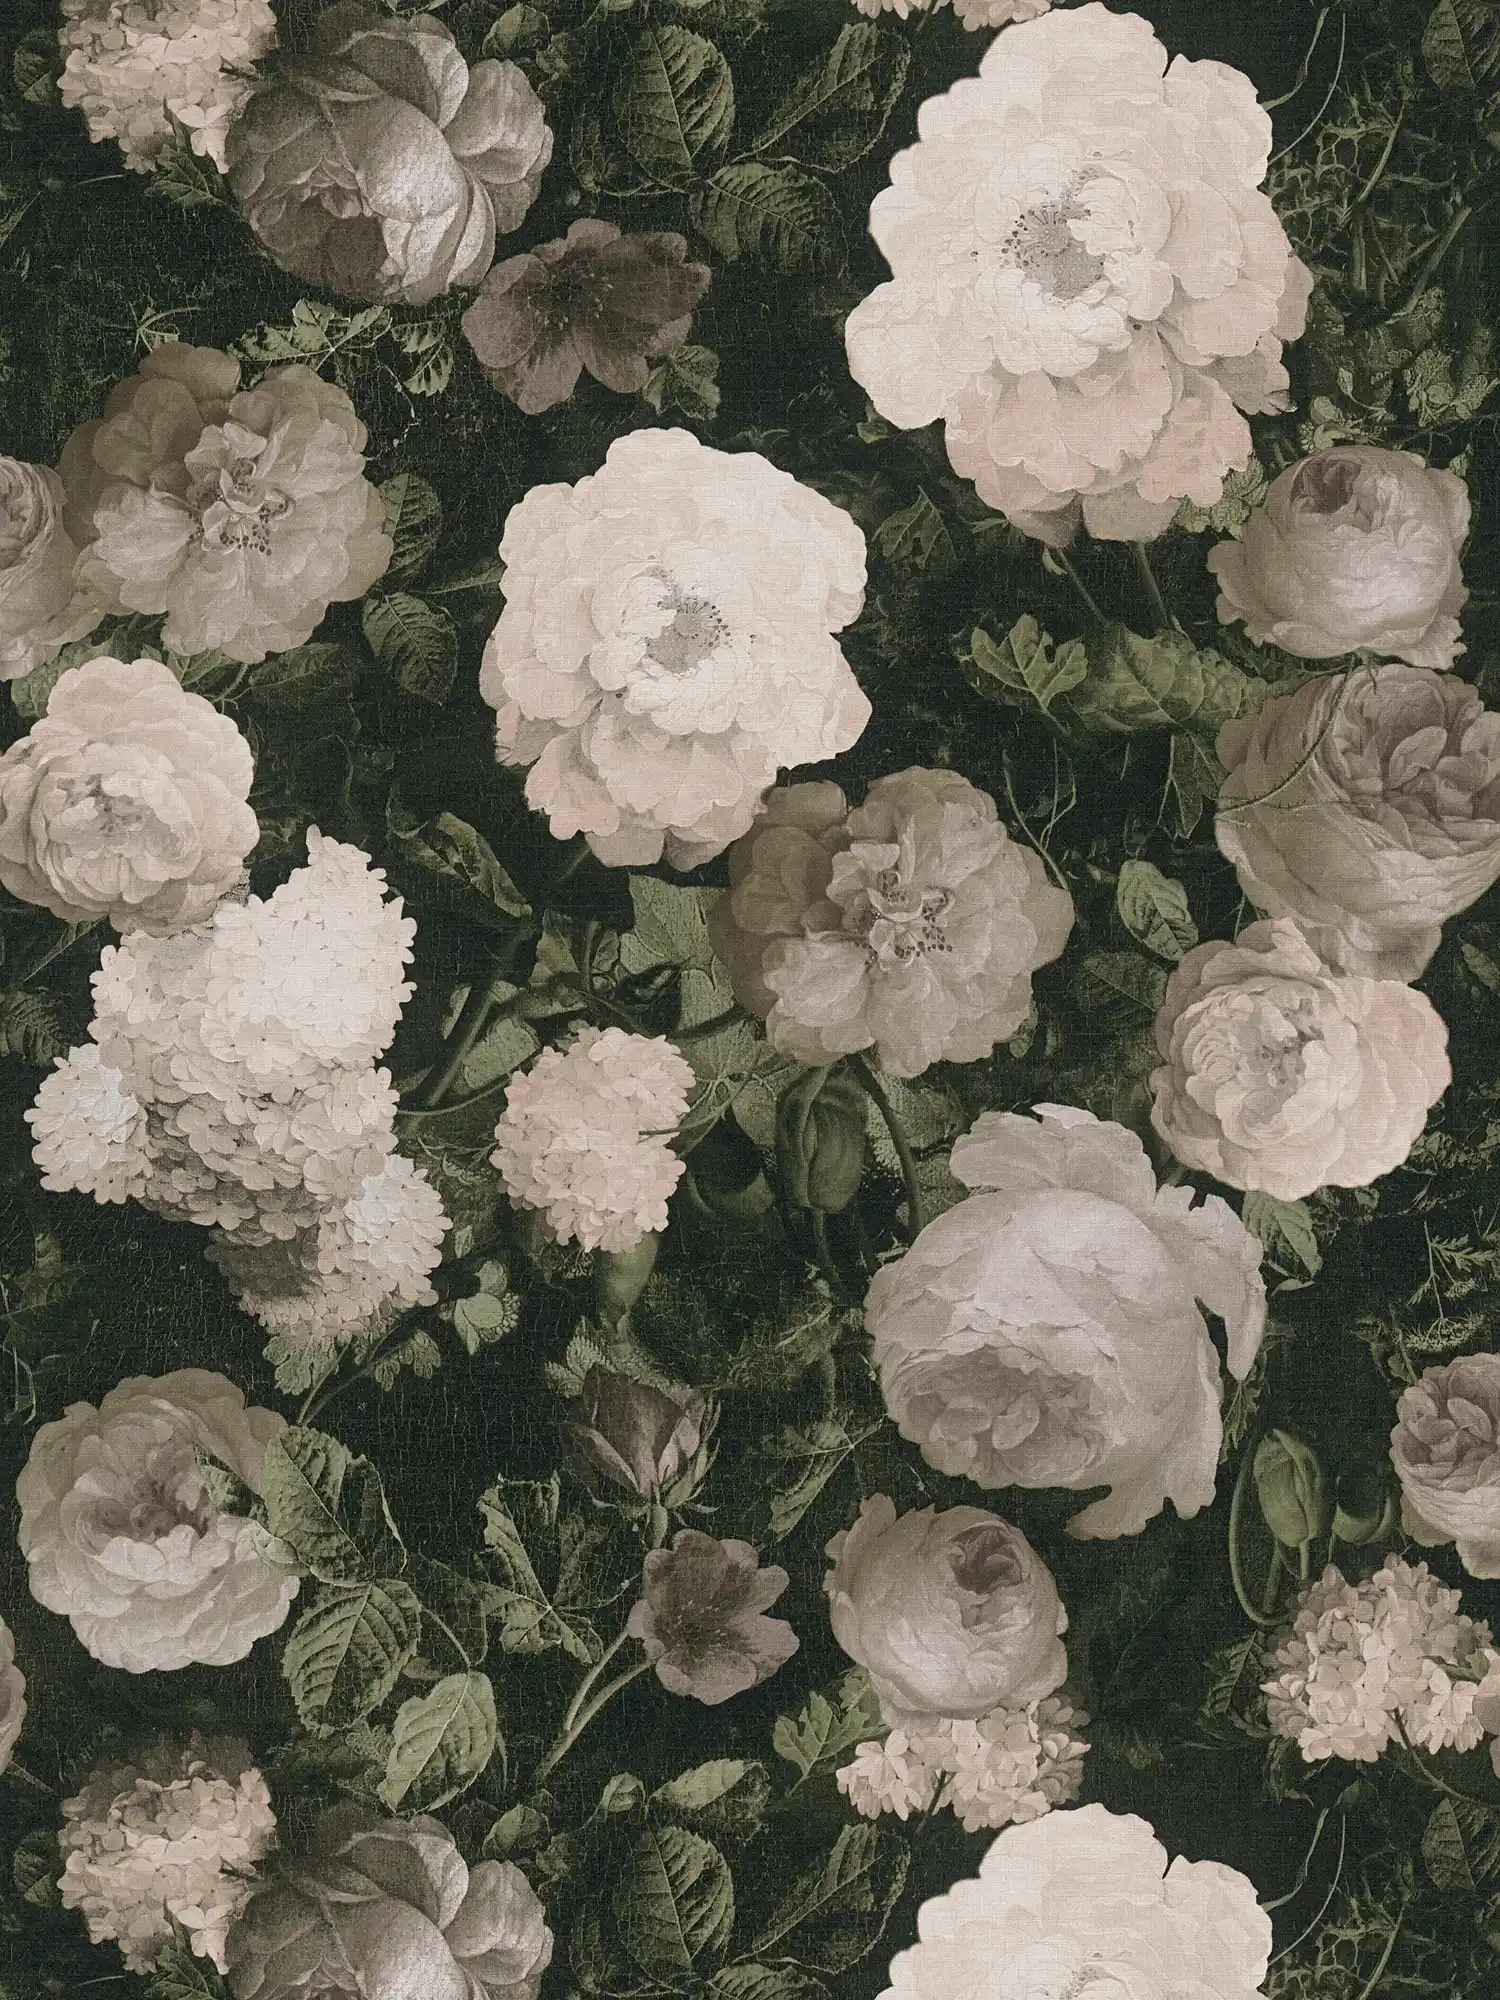         Papier peint intissé avec roses, tapis de fleurs - crème, vert, gris
    